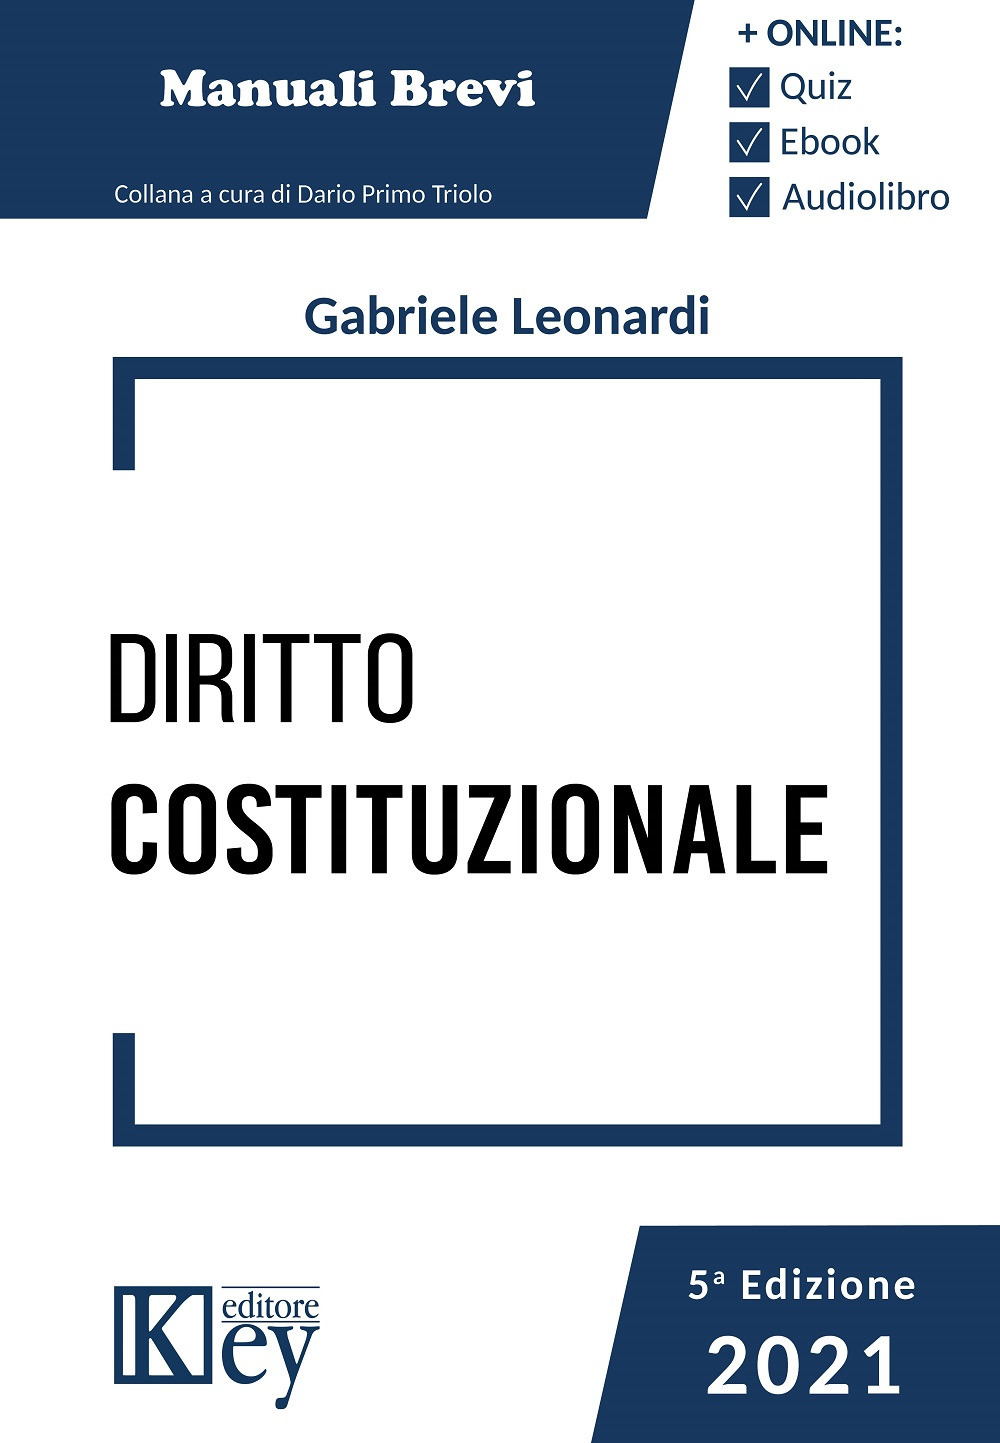 Libri Gabriele Leonardi - Diritto Costituzionale NUOVO SIGILLATO, EDIZIONE DEL 18/09/2021 SUBITO DISPONIBILE